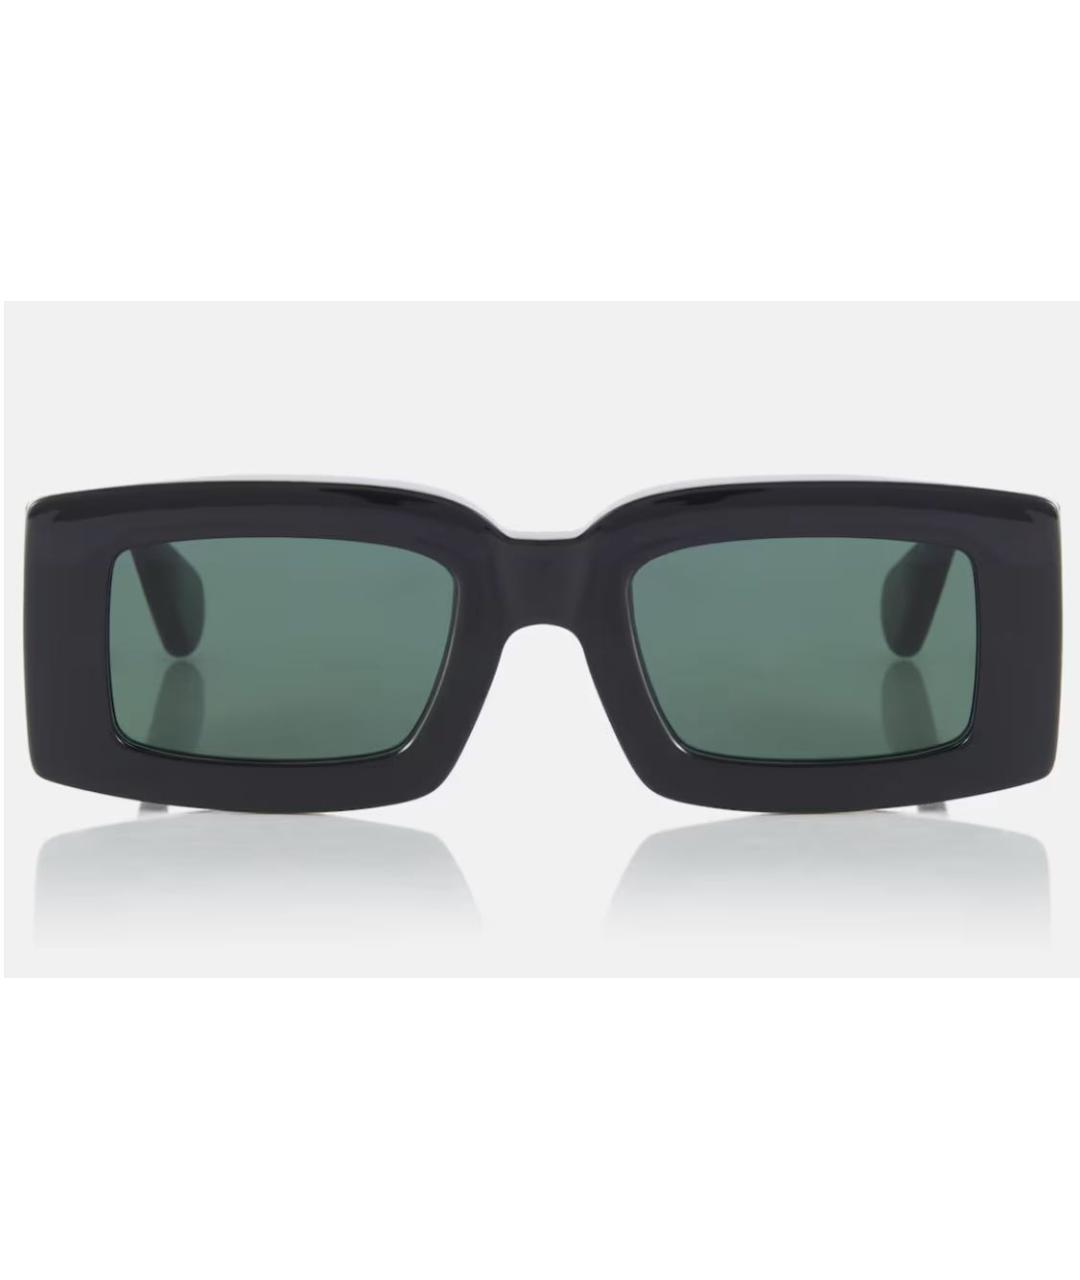 JACQUEMUS Черные пластиковые солнцезащитные очки, фото 4